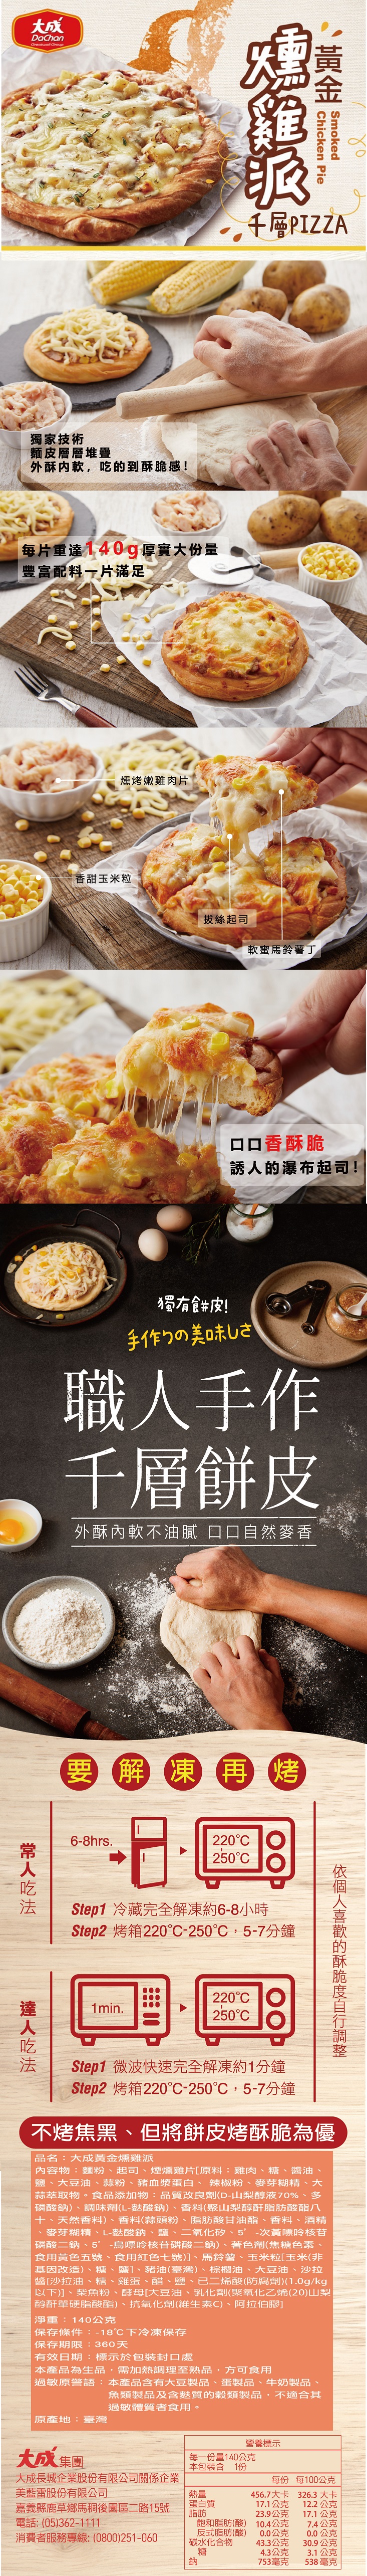 【大成食品】黃金燻雞派6包組 140g/包